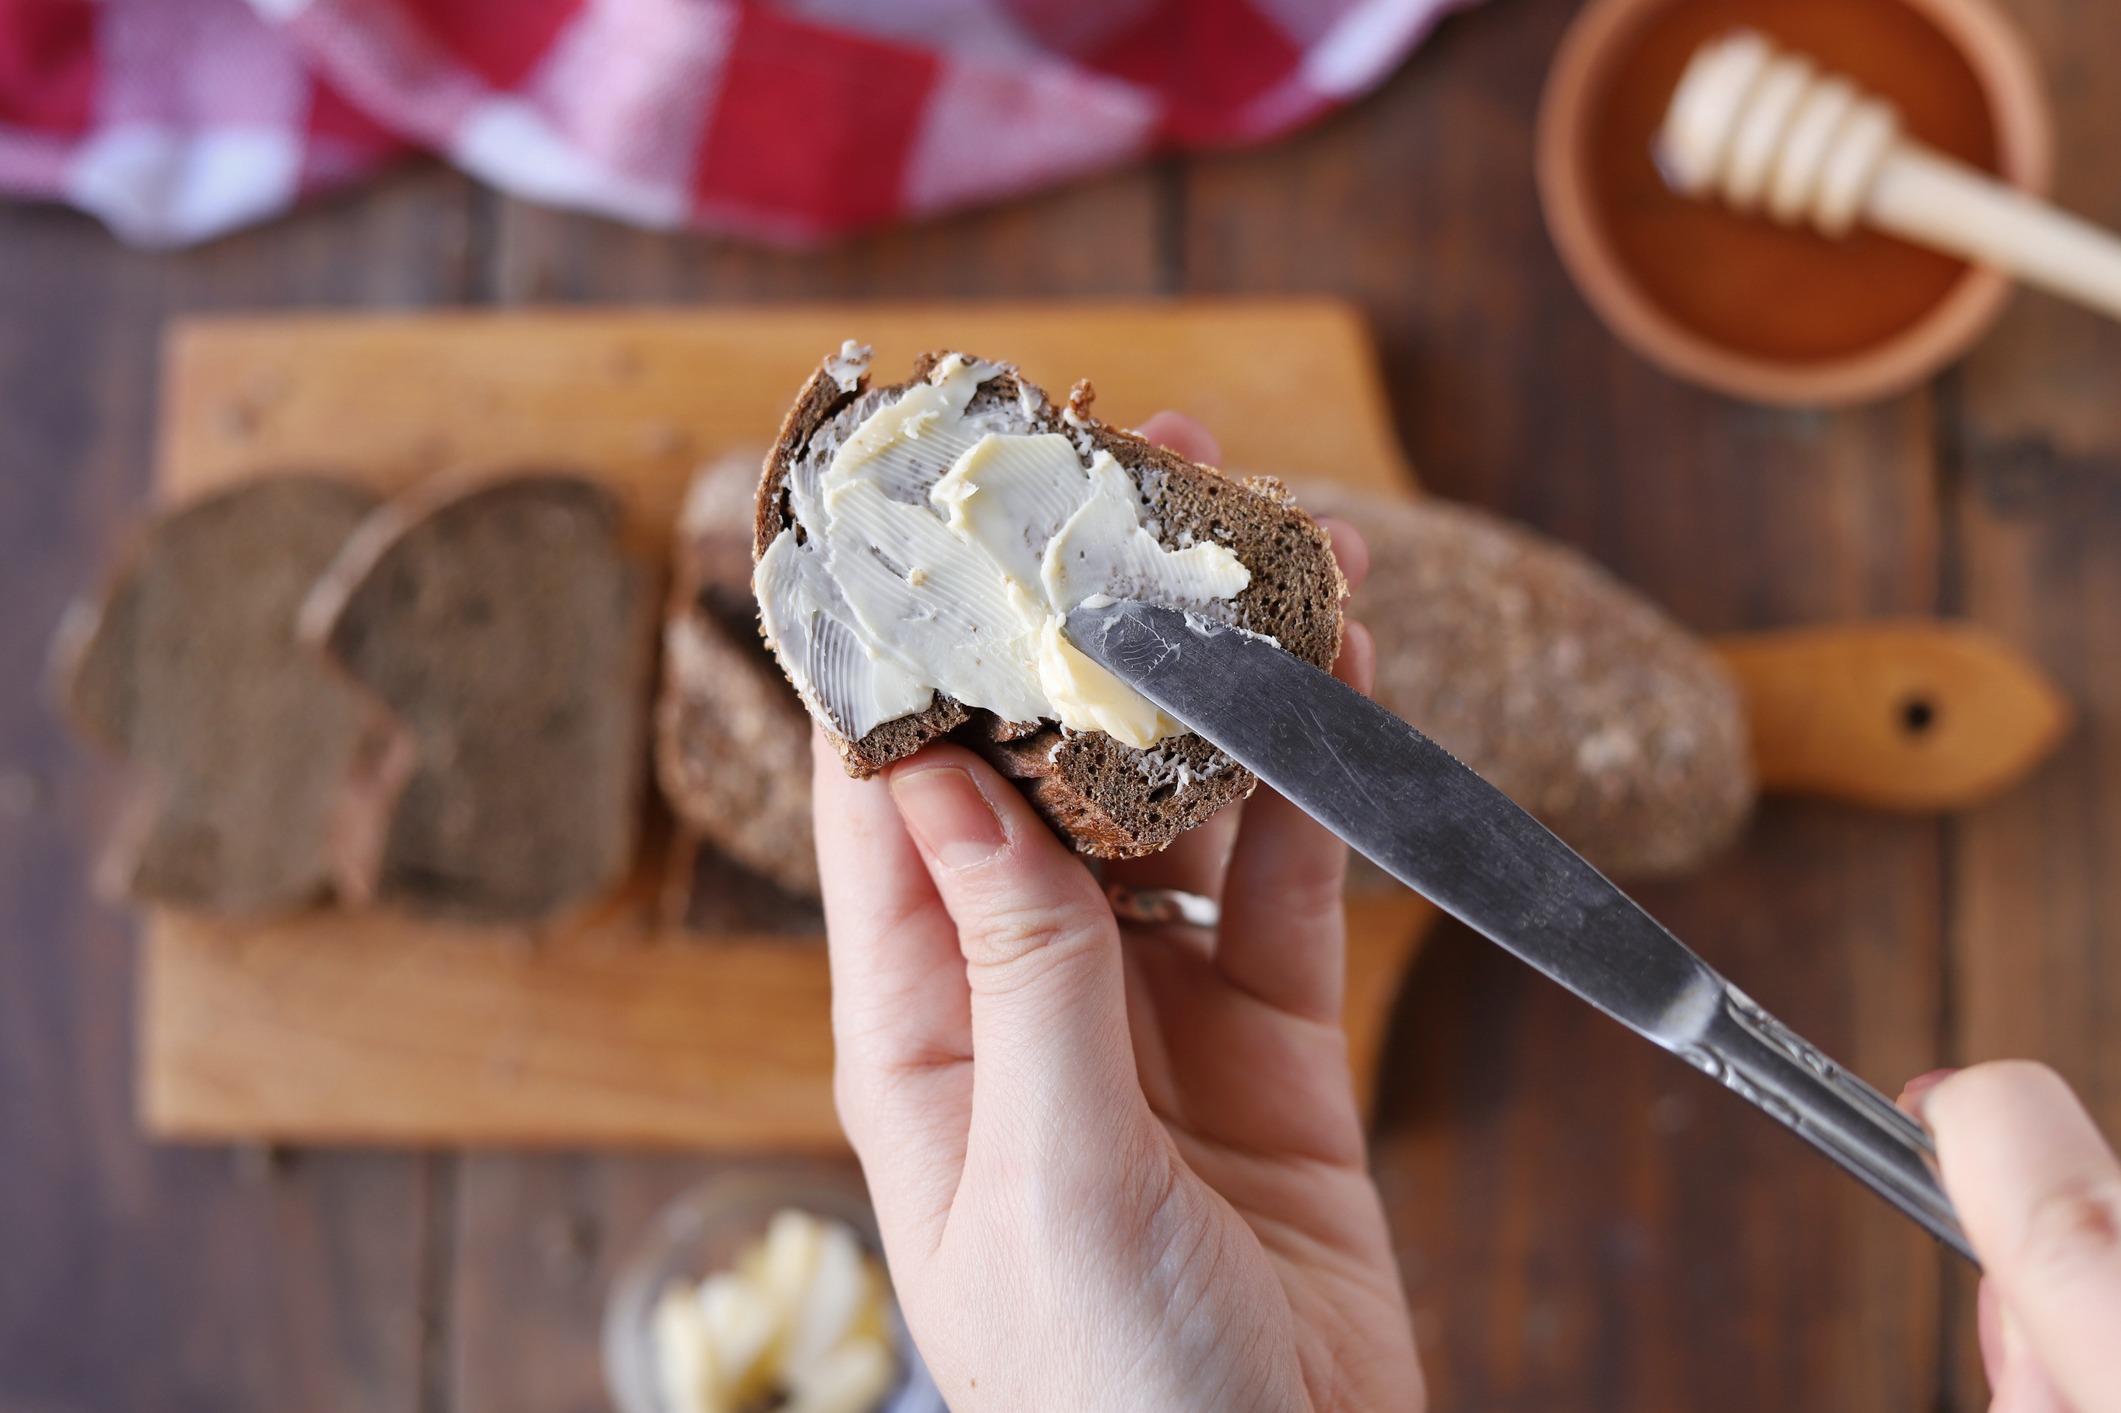 Le beurre de cacahuète au régime : tout ce qu'il faut savoir – Allmyketo